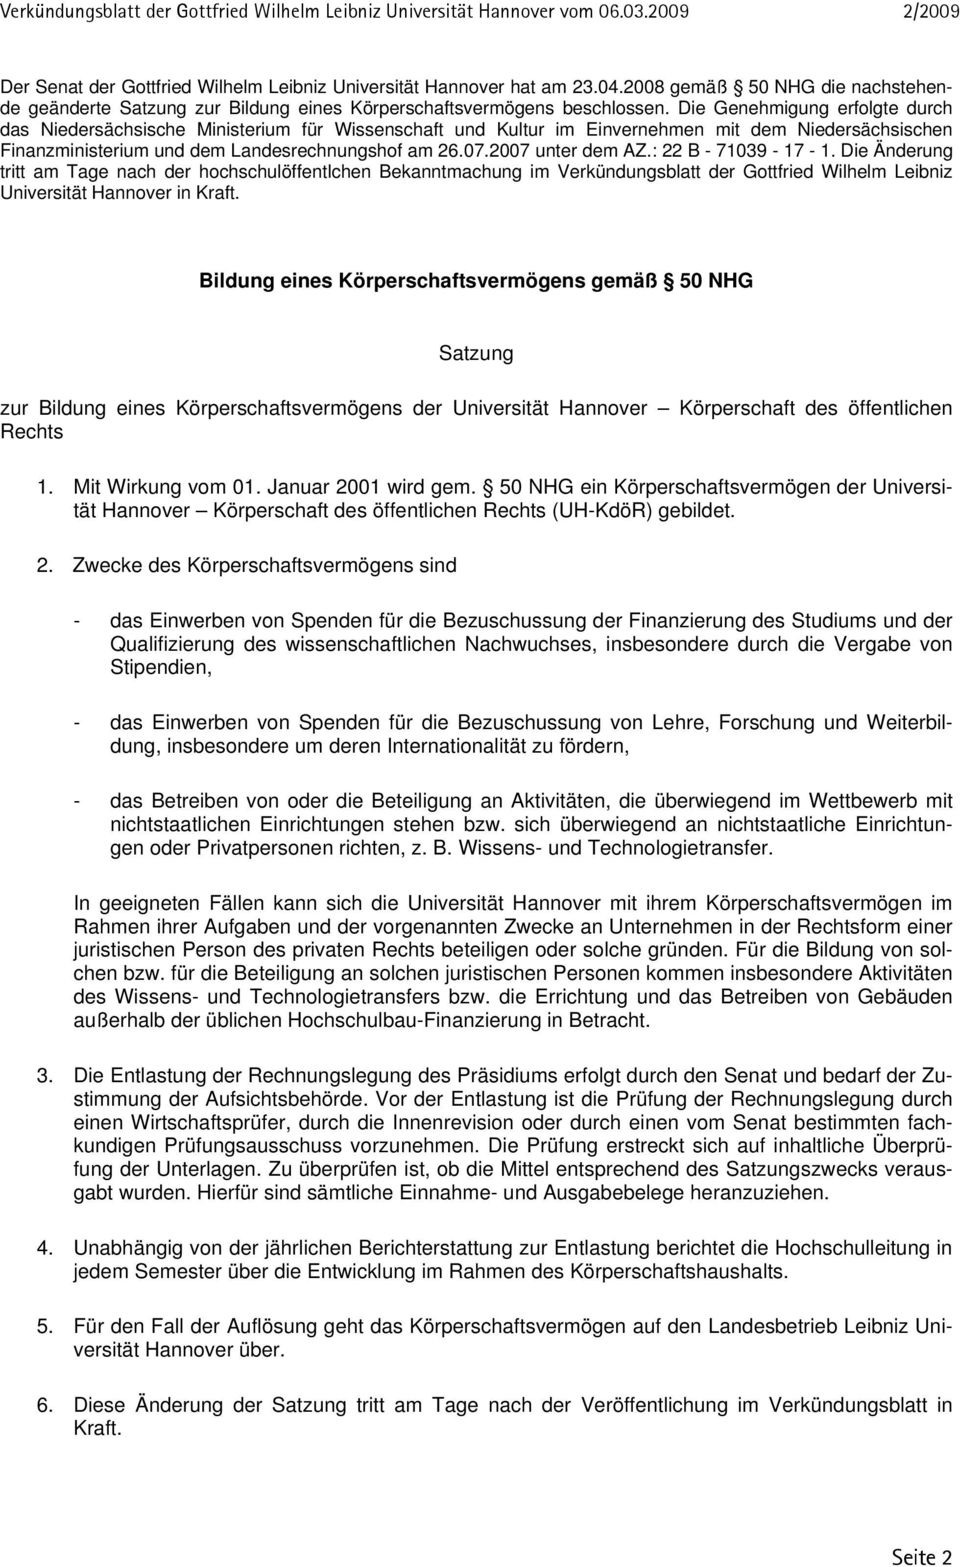 2007 unter dem AZ.: 22 B - 71039-17 - 1. Die Änderung tritt am Tage nach der hochschulöffentlchen Bekanntmachung im Verkündungsblatt der Gottfried Wilhelm Leibniz Universität Hannover in Kraft.